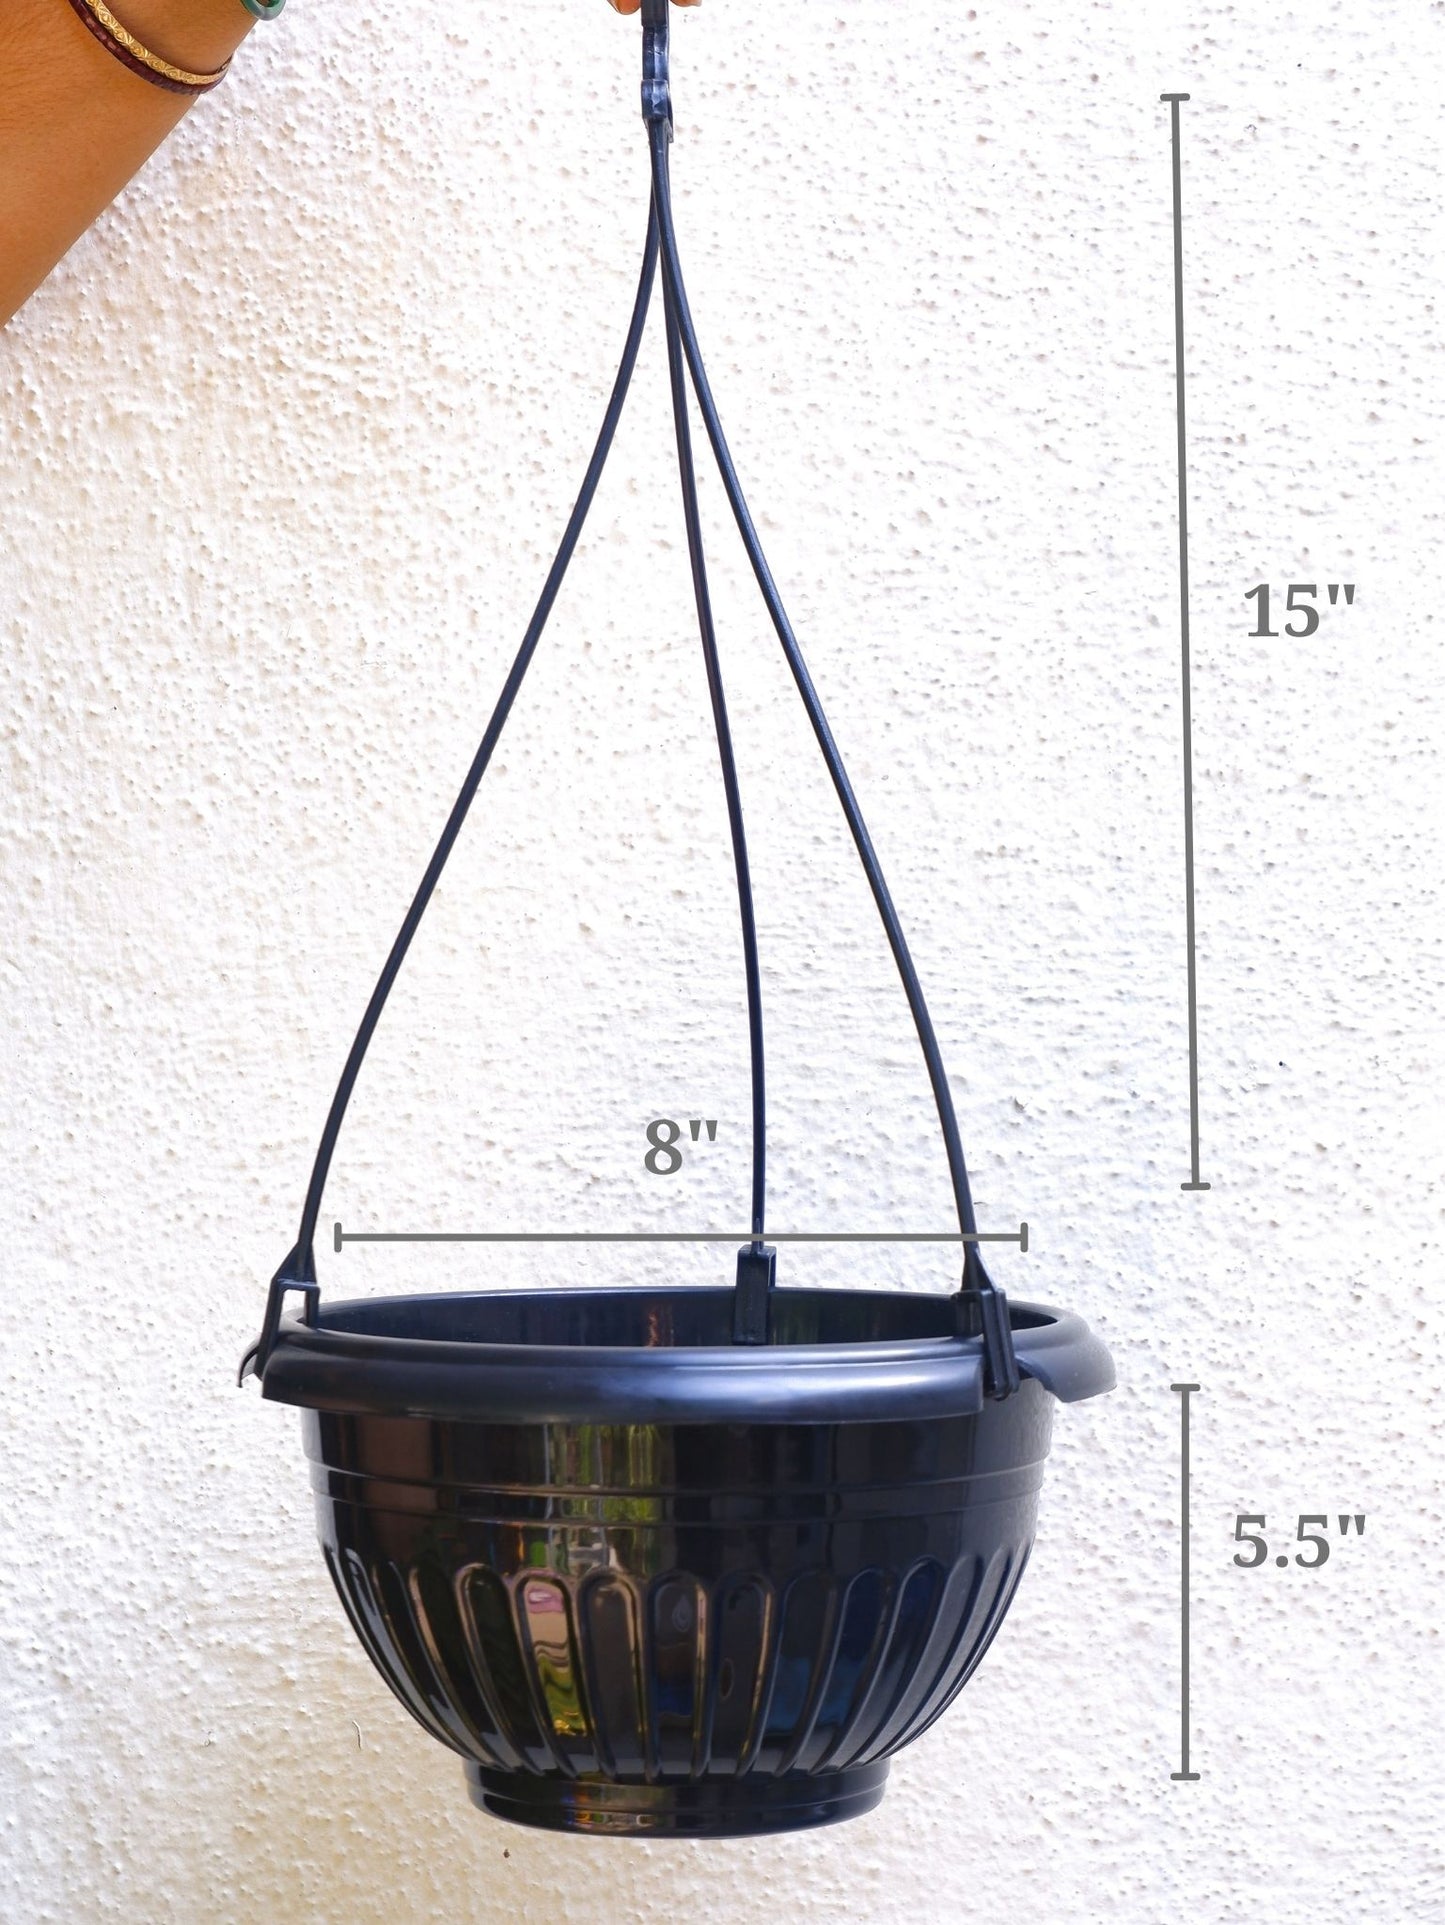 Shop online plastic hanging pots for big indoor plants and outdoor plants